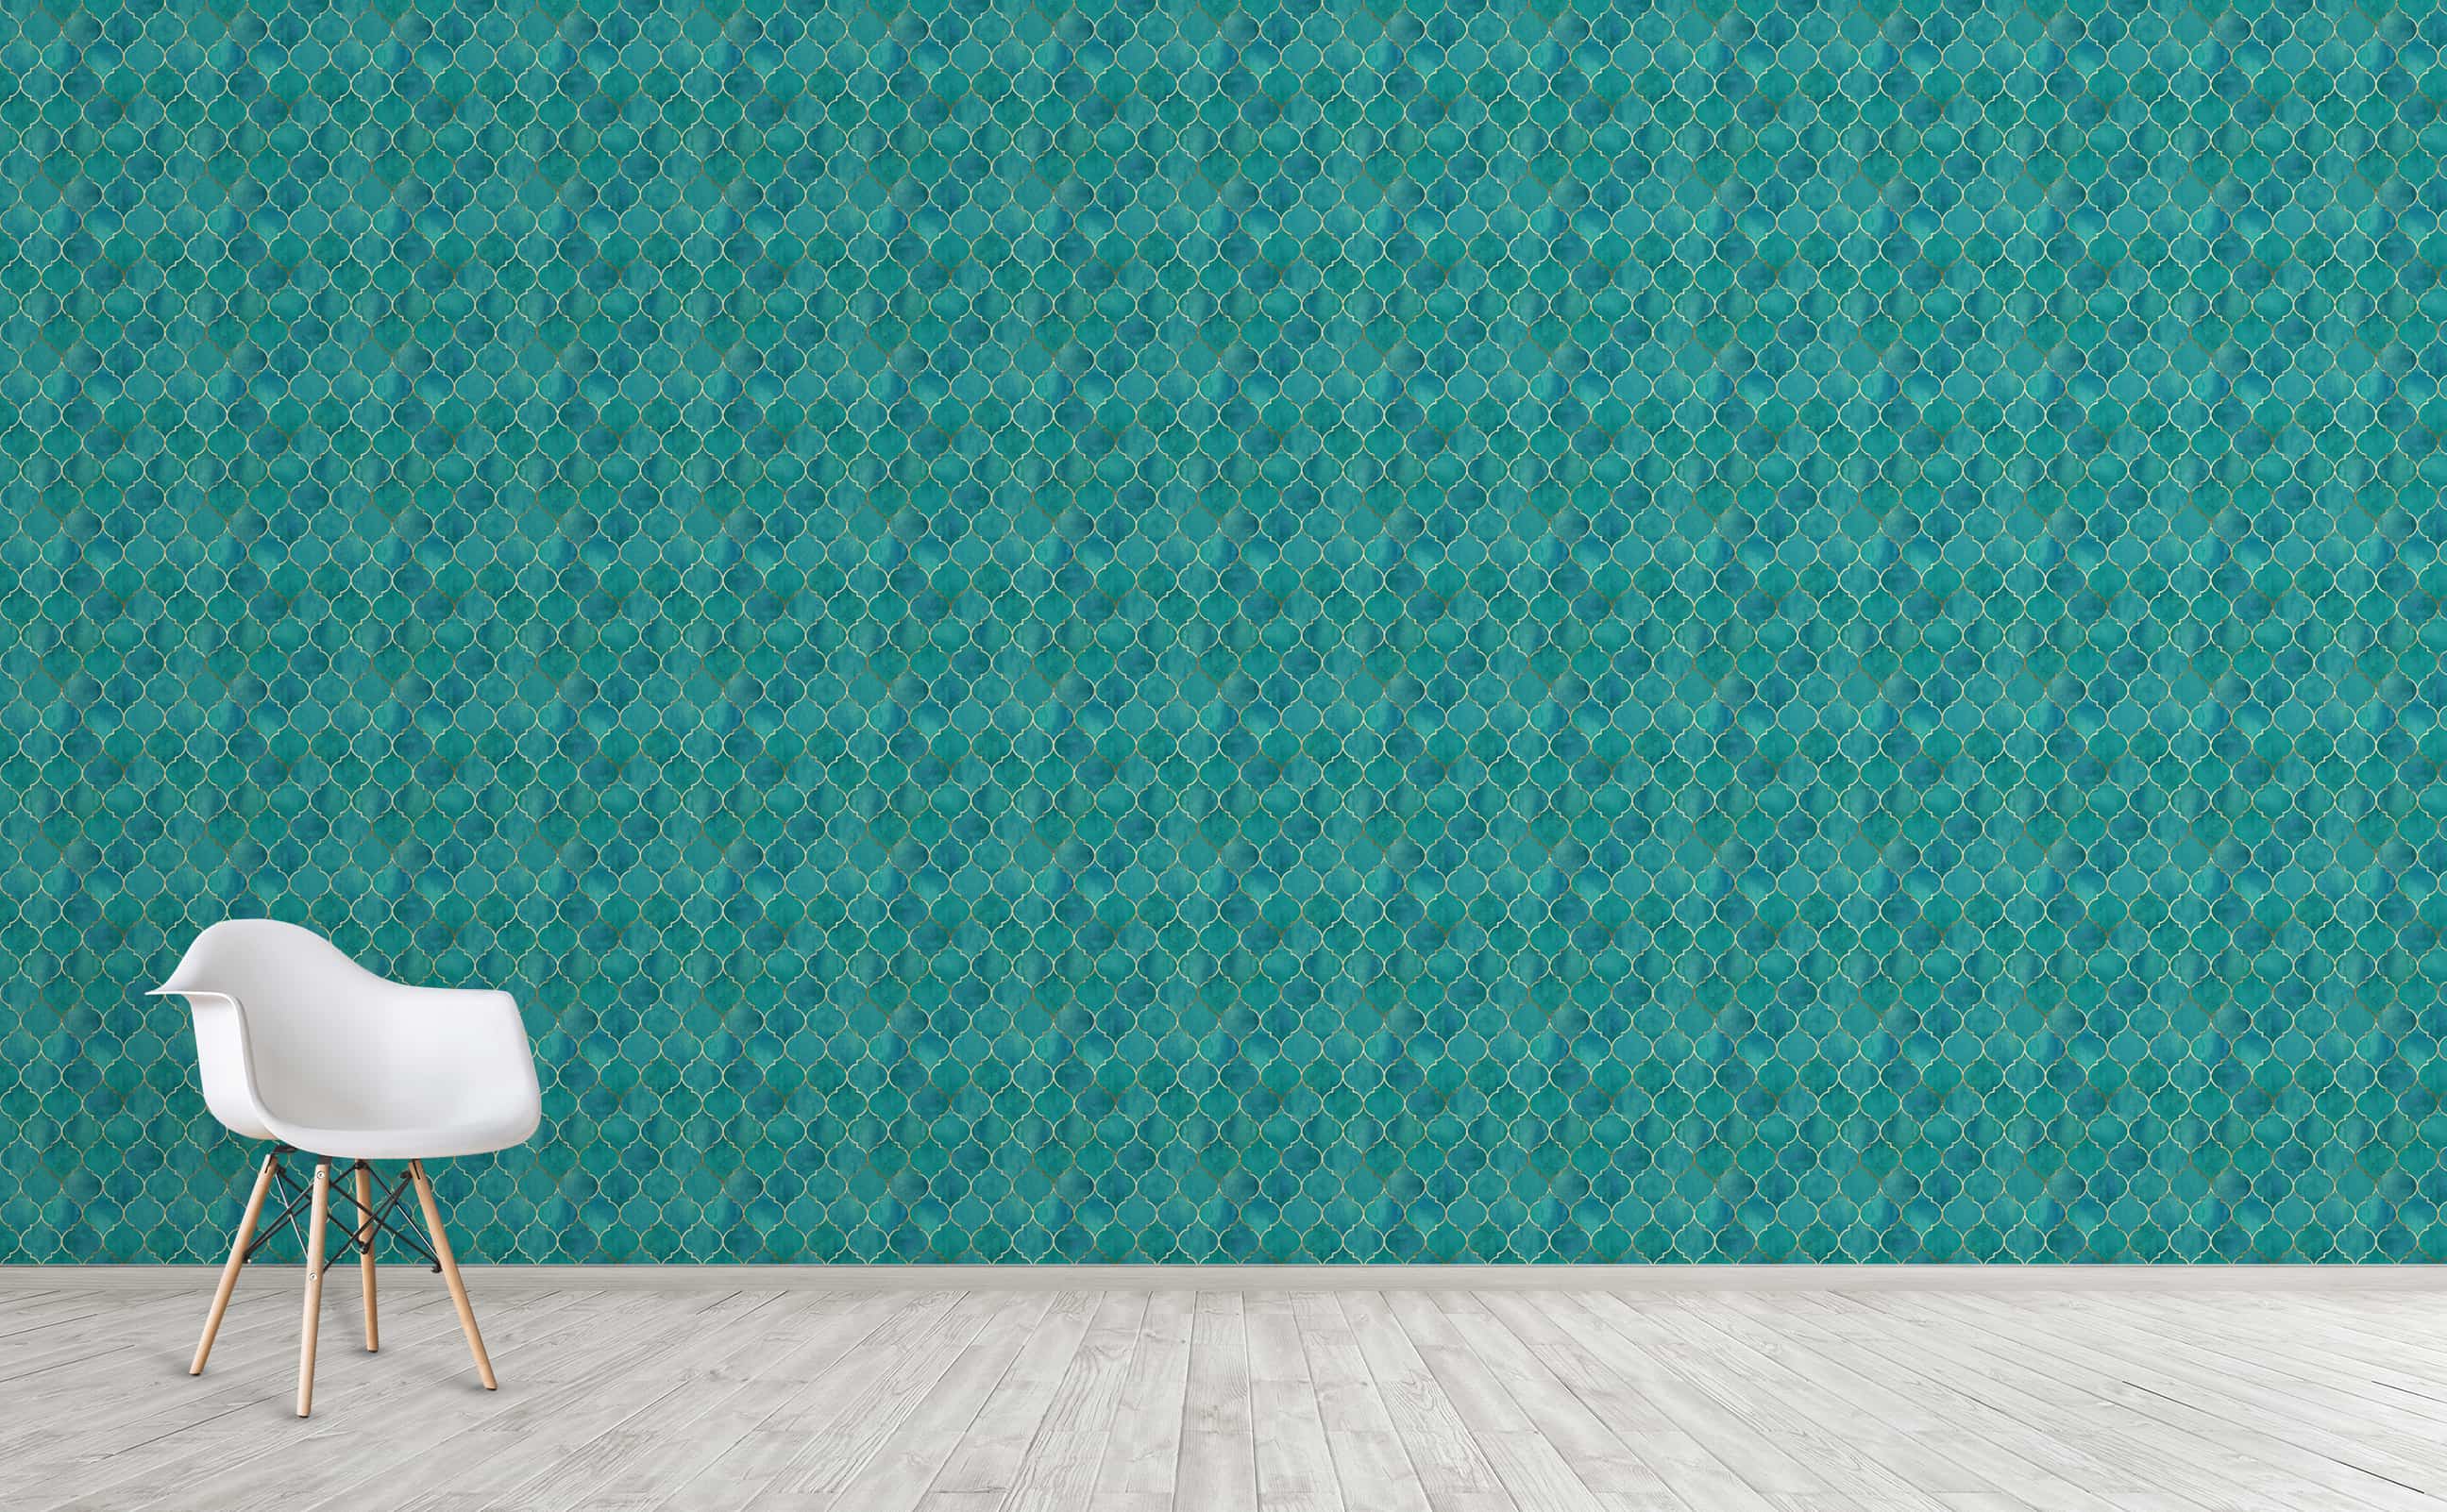 Thật tuyệt vời khi trang trí phòng của bạn với nền giấy dán tường xanh xếp lát này! Màu xanh thôi cũng đủ để khiến phòng trở nên tươi mới và thư giãn hơn rất nhiều. Bạn sẽ bất ngờ khi bước vào phòng và thấy bức tường xanh thật dễ chịu. Hãy chắc chắn rằng bạn sẽ tìm được không gian riêng tư tuyệt vời này.